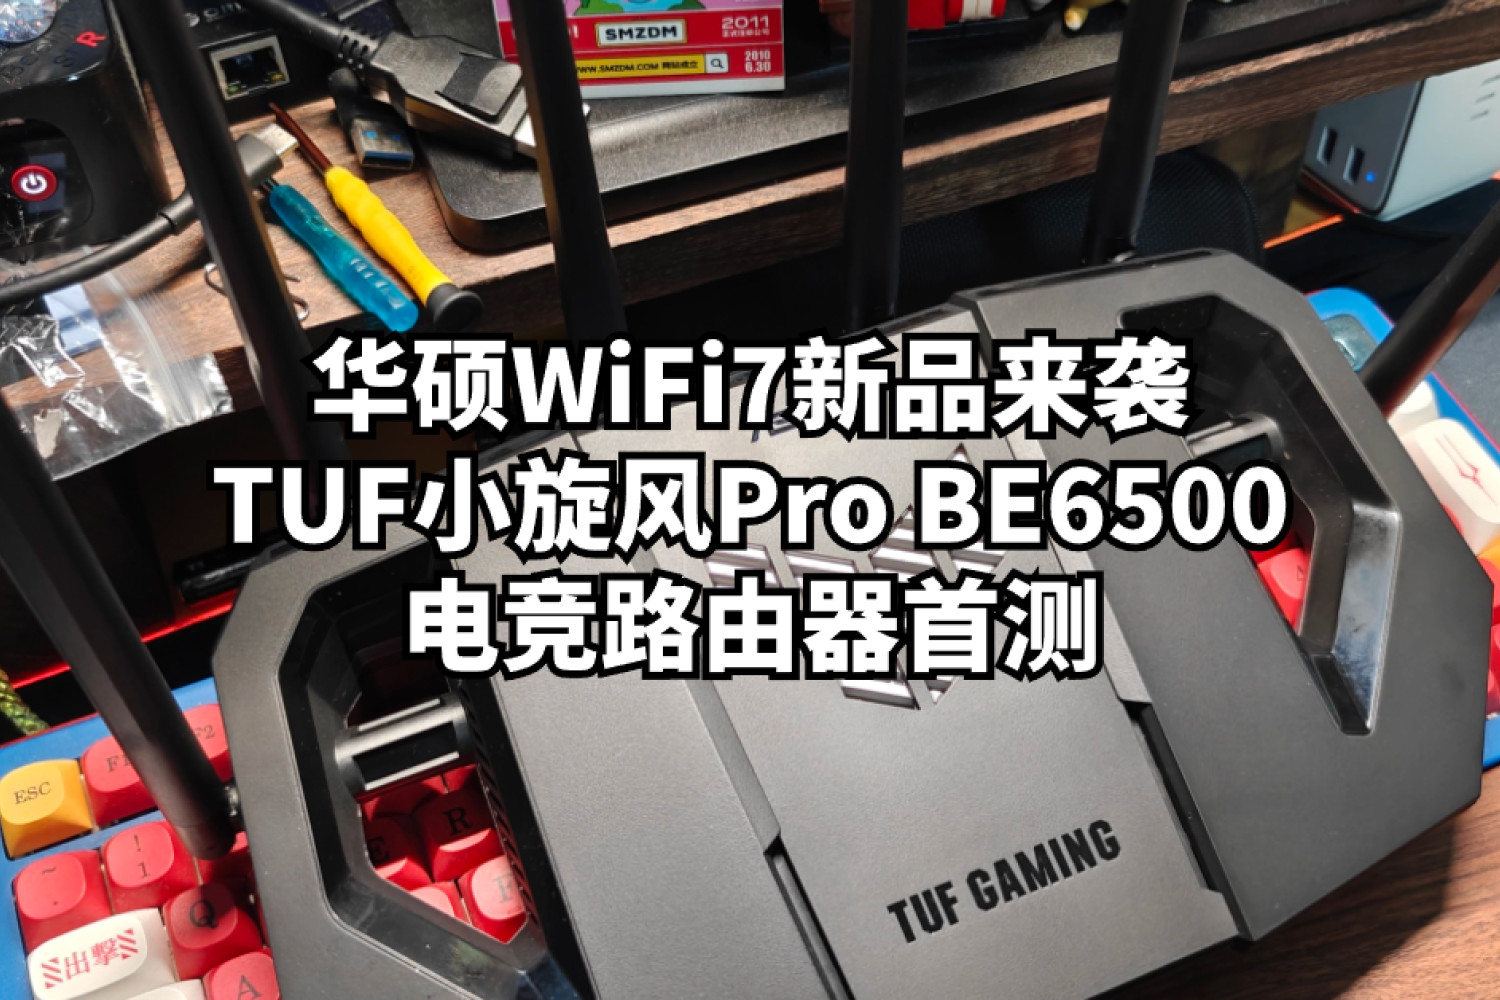 TUF小旋风Pro BE6500电竞路由器首测